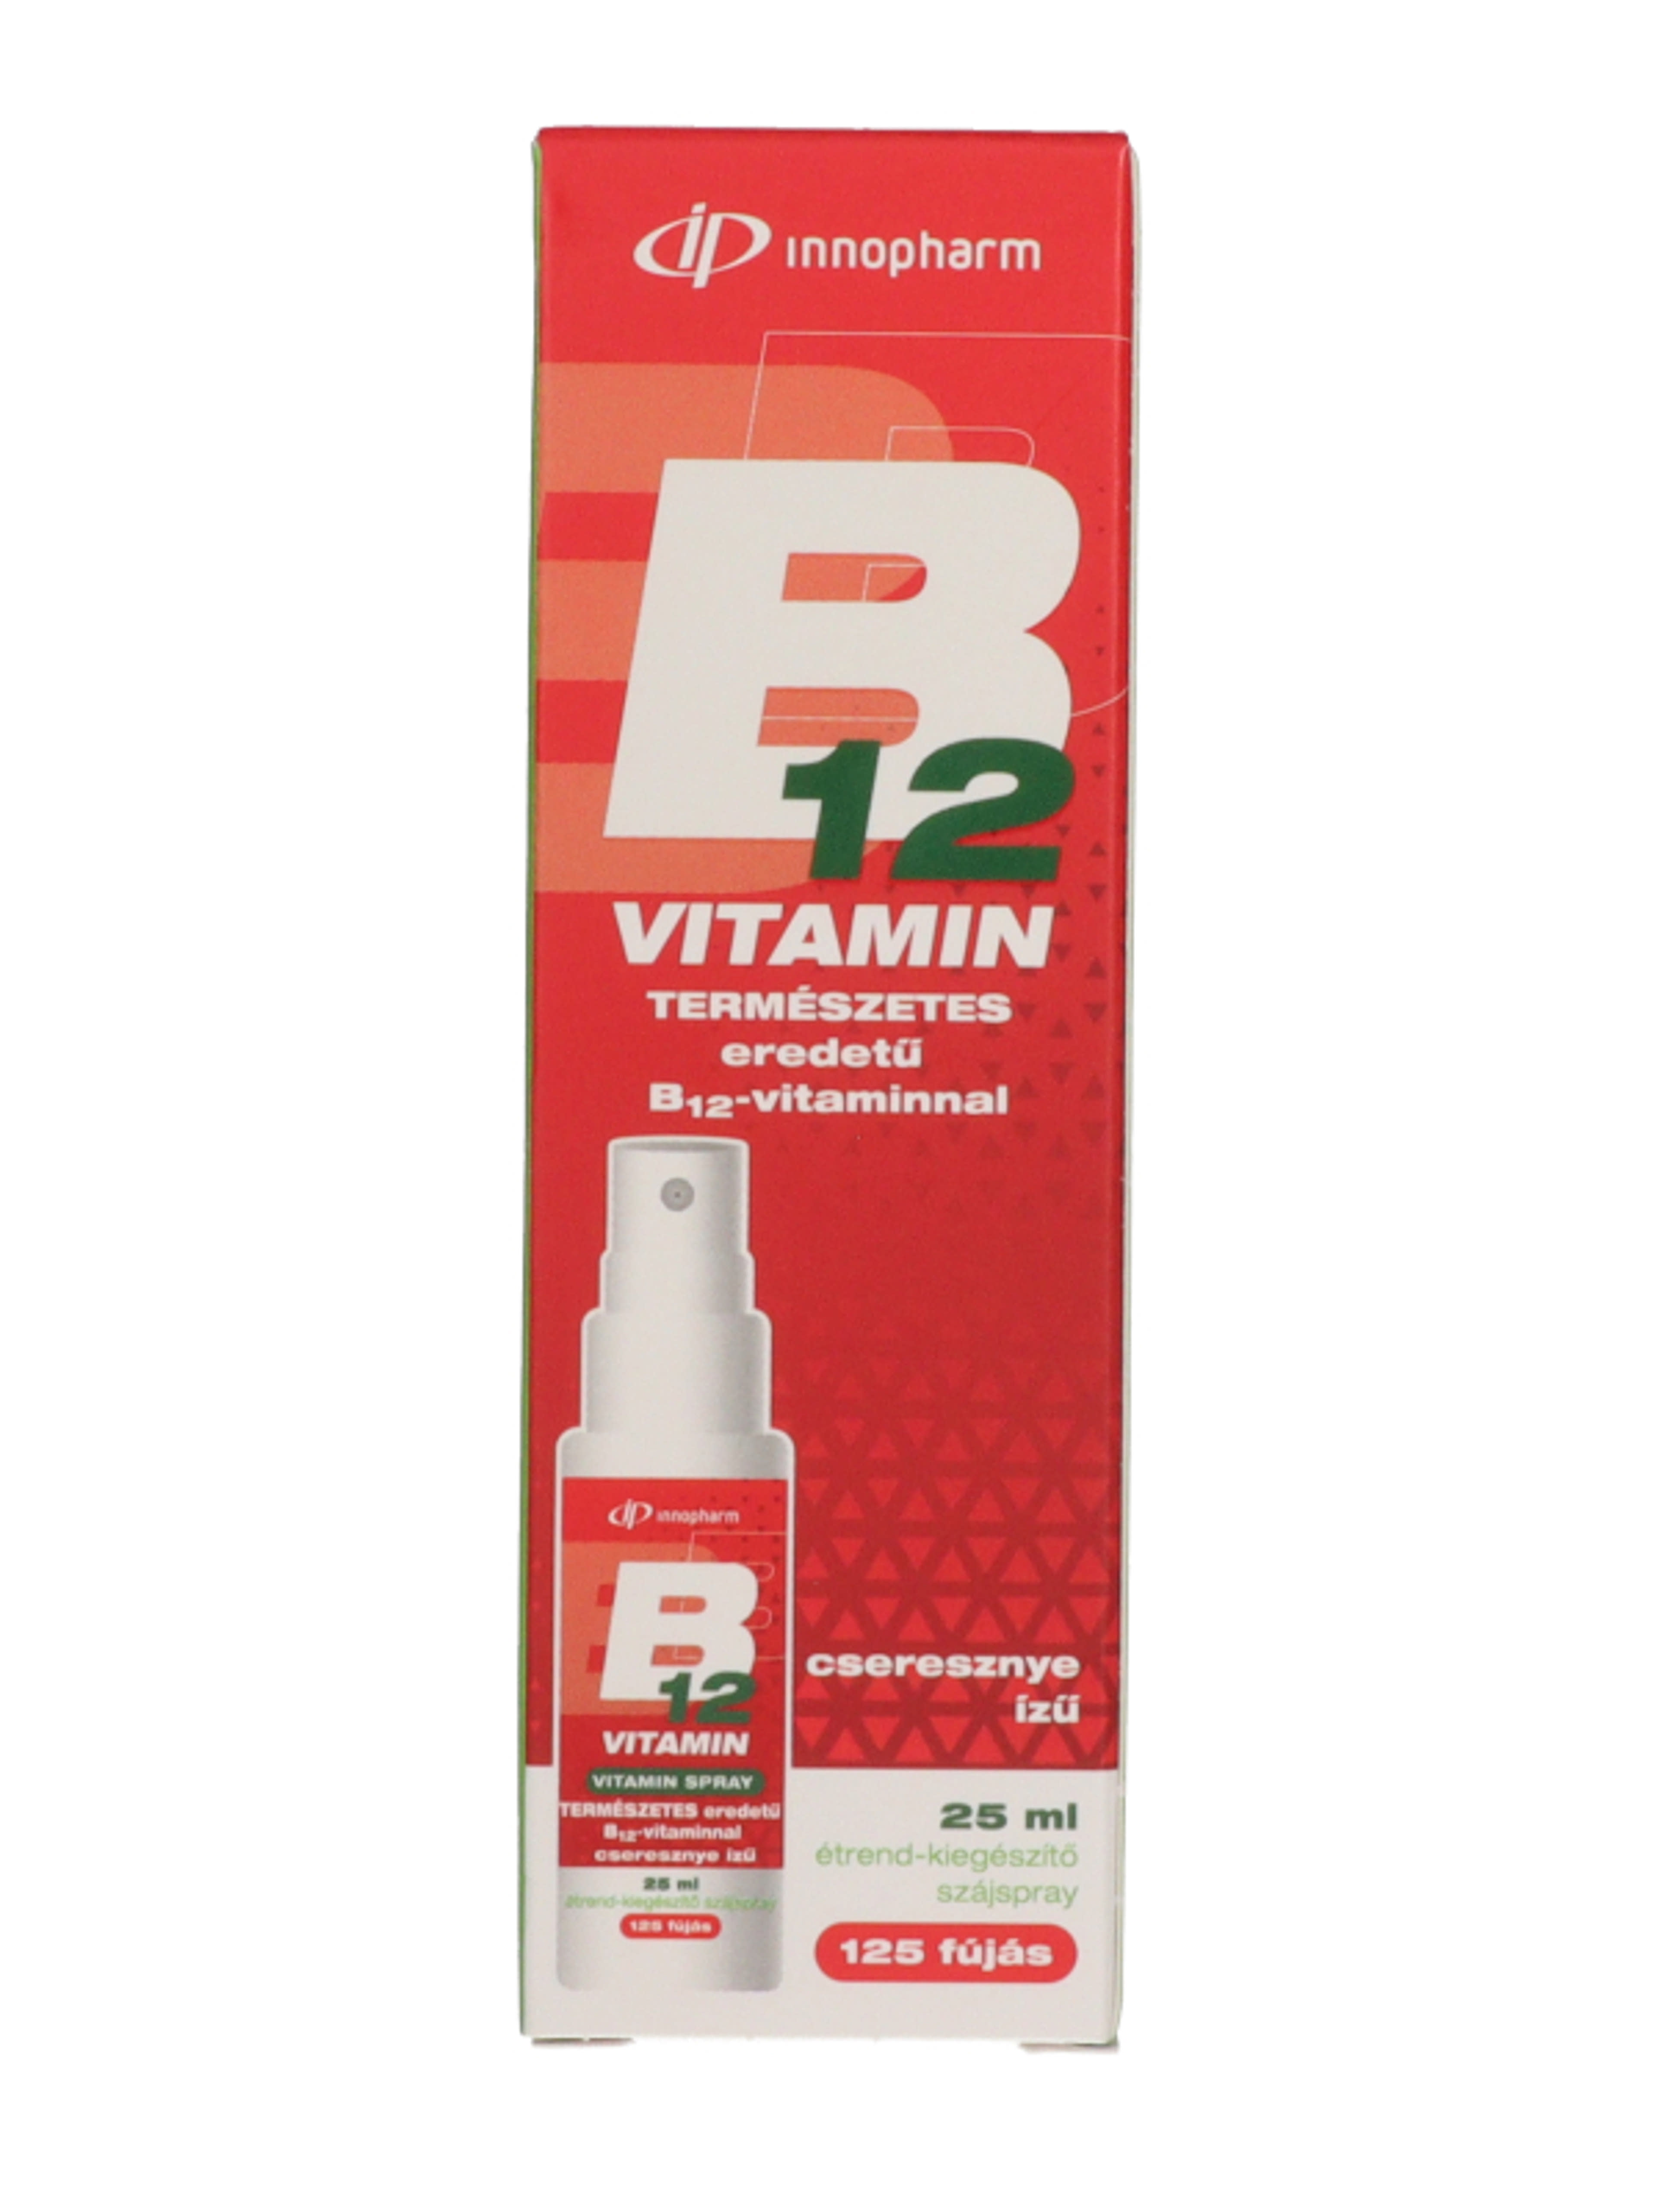 Innopharm B12-vitamin étrend-kiegészítő szájspray cseresznye ízű - 25 ml